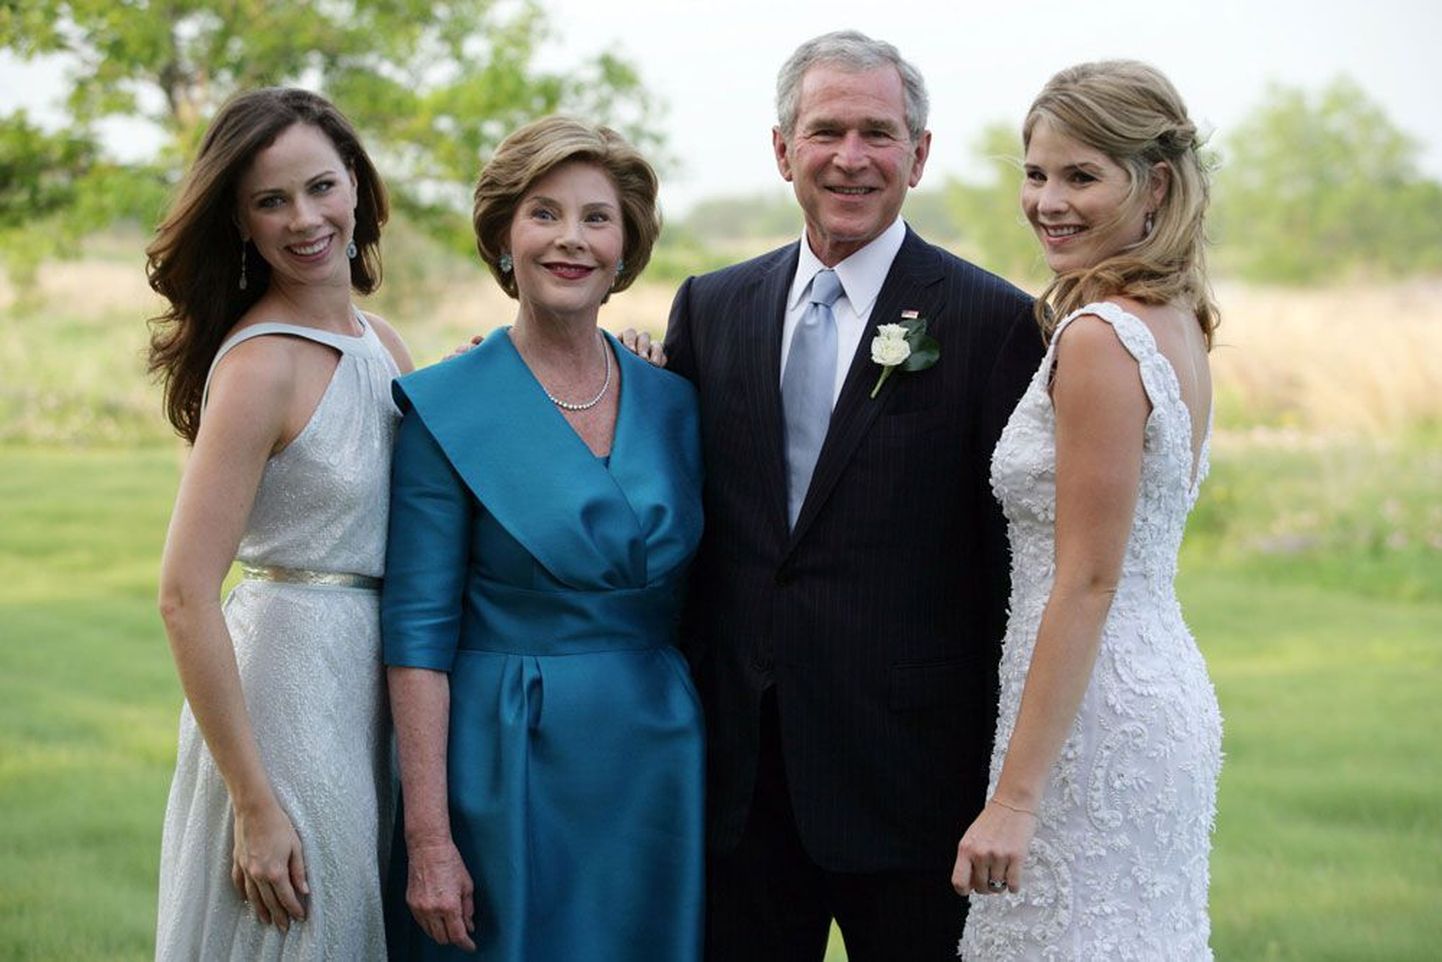 Праздничная семейная фотография: Джордж Буш, Лаура Буш и родившиеся в 1981 году их дочери-близнецы Дженна и Барбара.